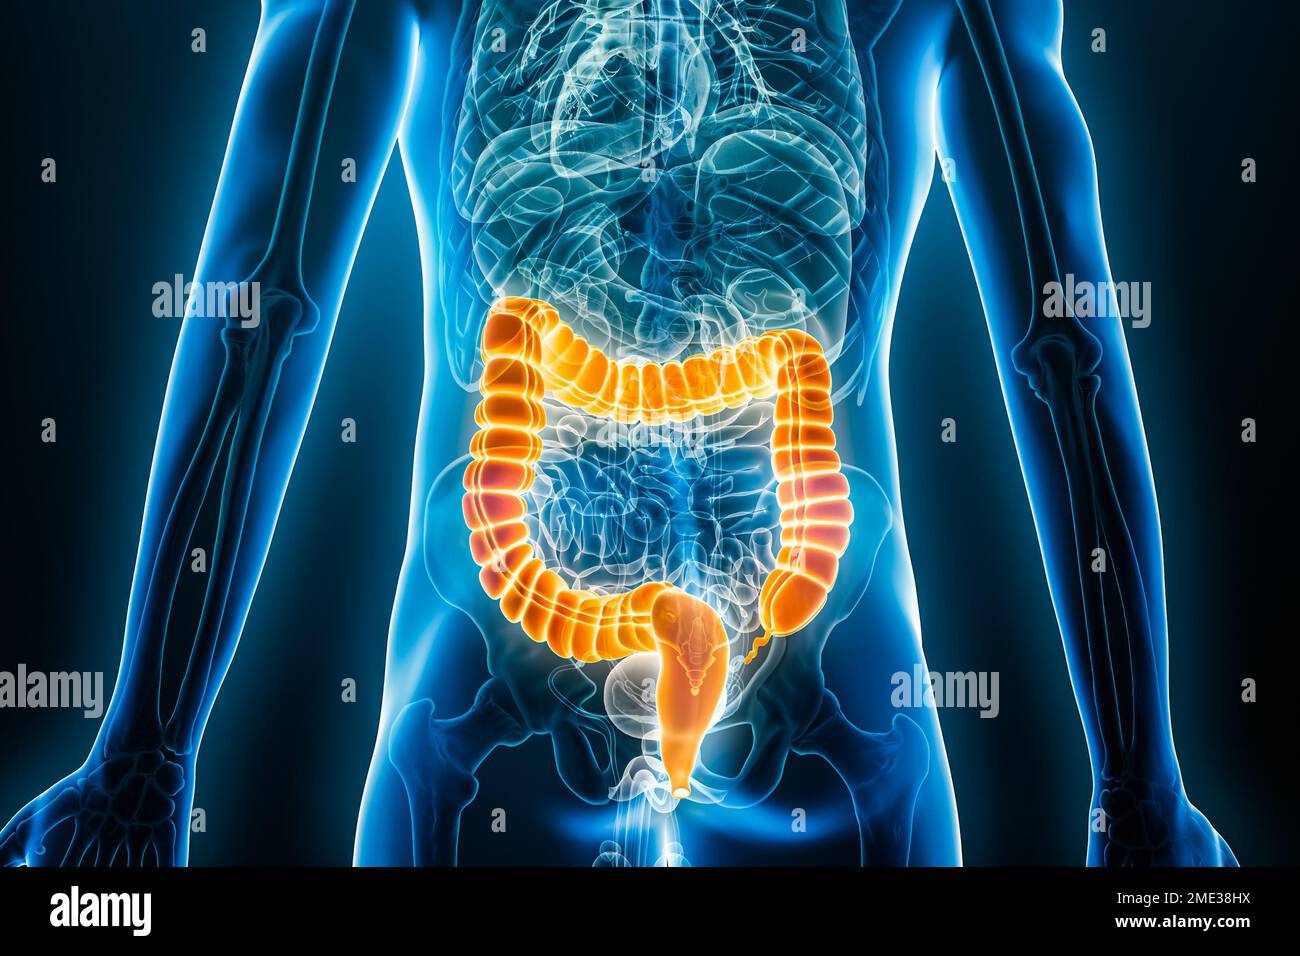 Vista posterior o posterior de rayos X del intestino grueso o colon 3D que representa la ilustración con contornos del cuerpo masculino. Anatomía humana, intestinos, médico, biología, sc Foto de stock